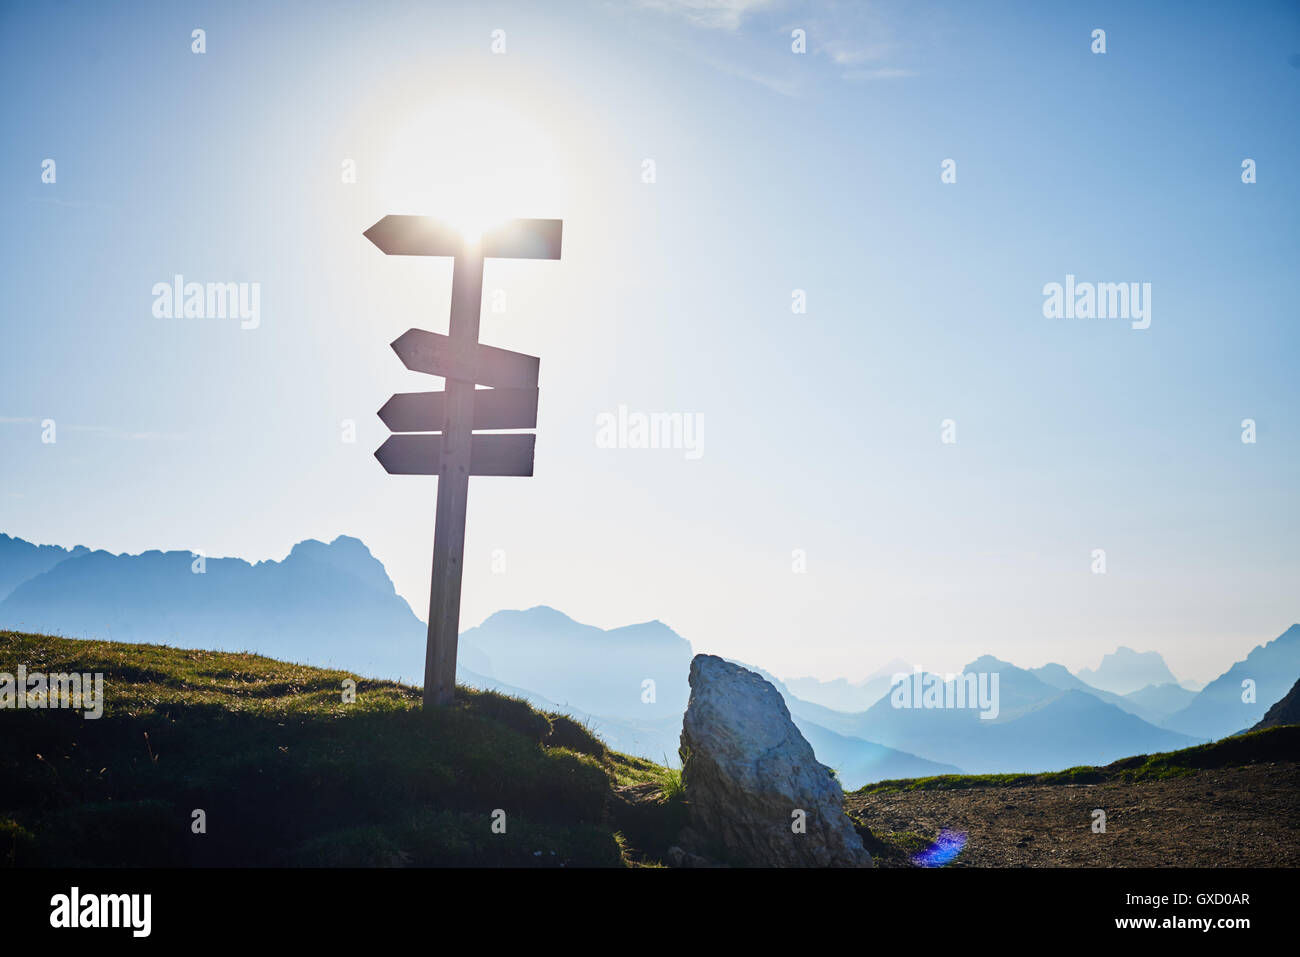 Signpost on mountain in sunlight, Austria Stock Photo